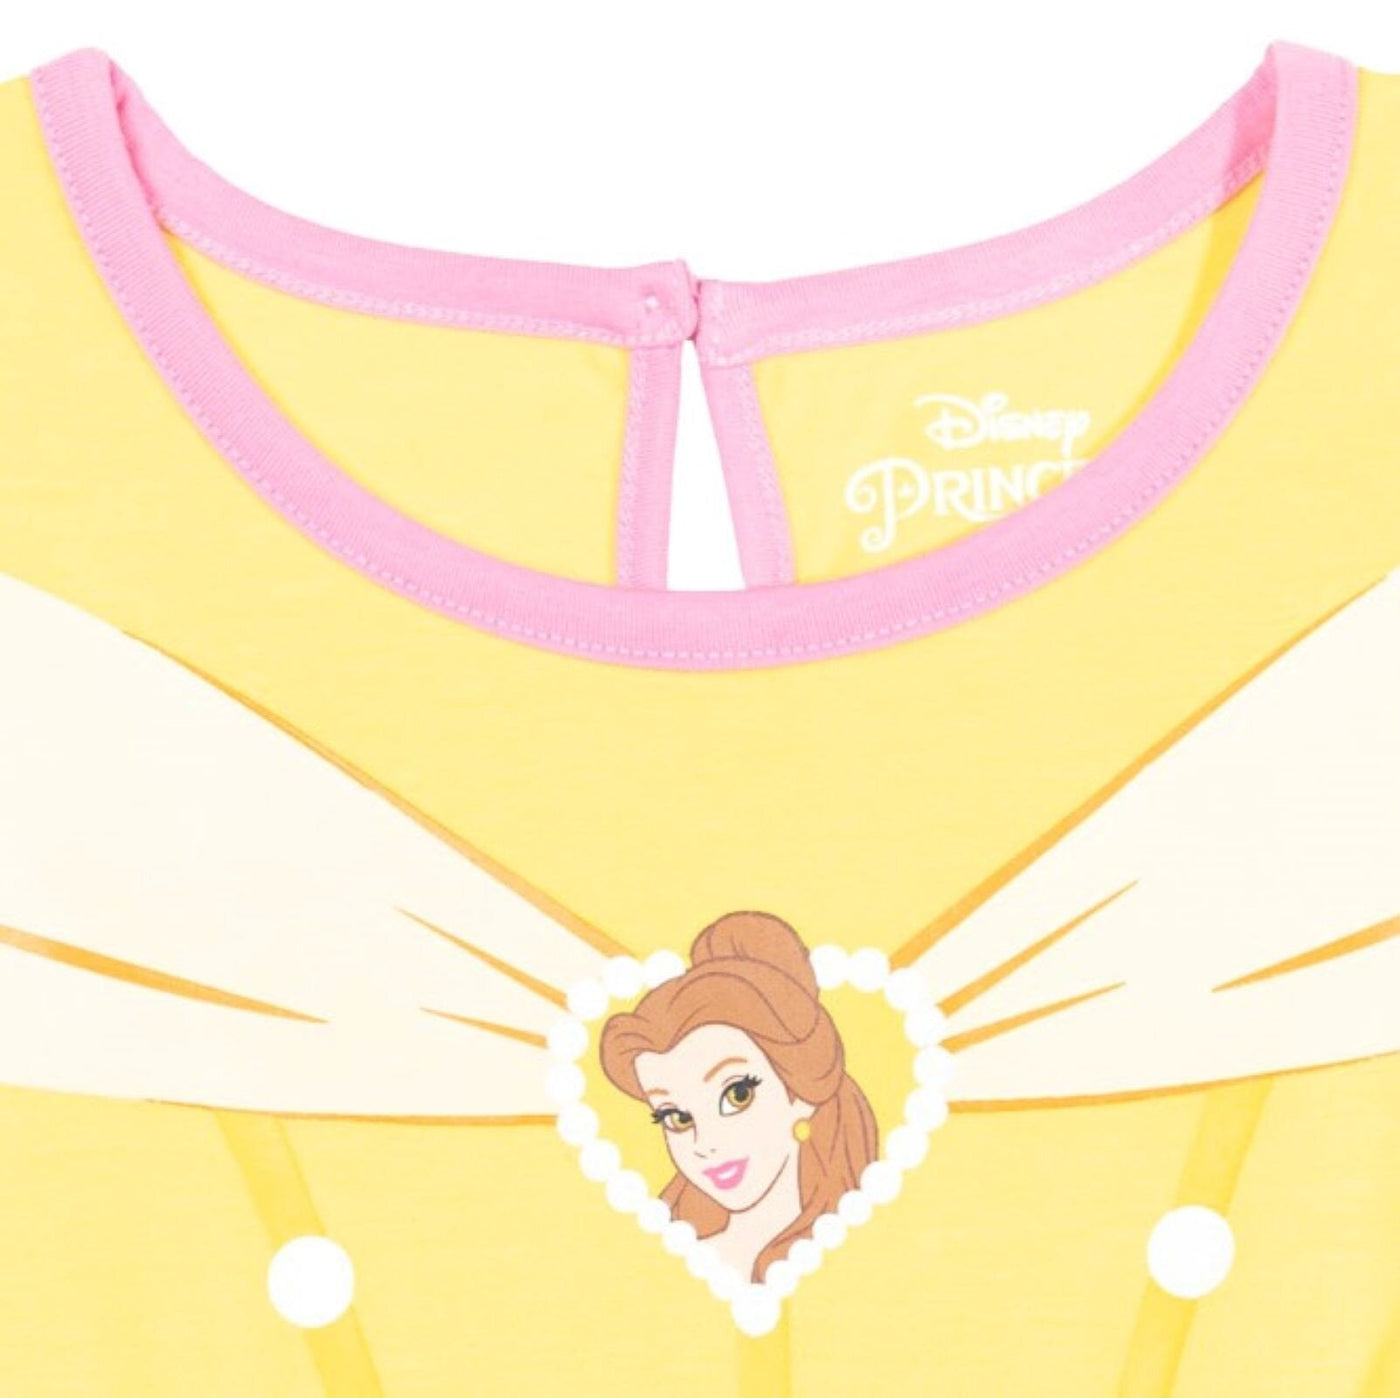 Disney Princess Belle Romper With Skirt Overlay - imagikids